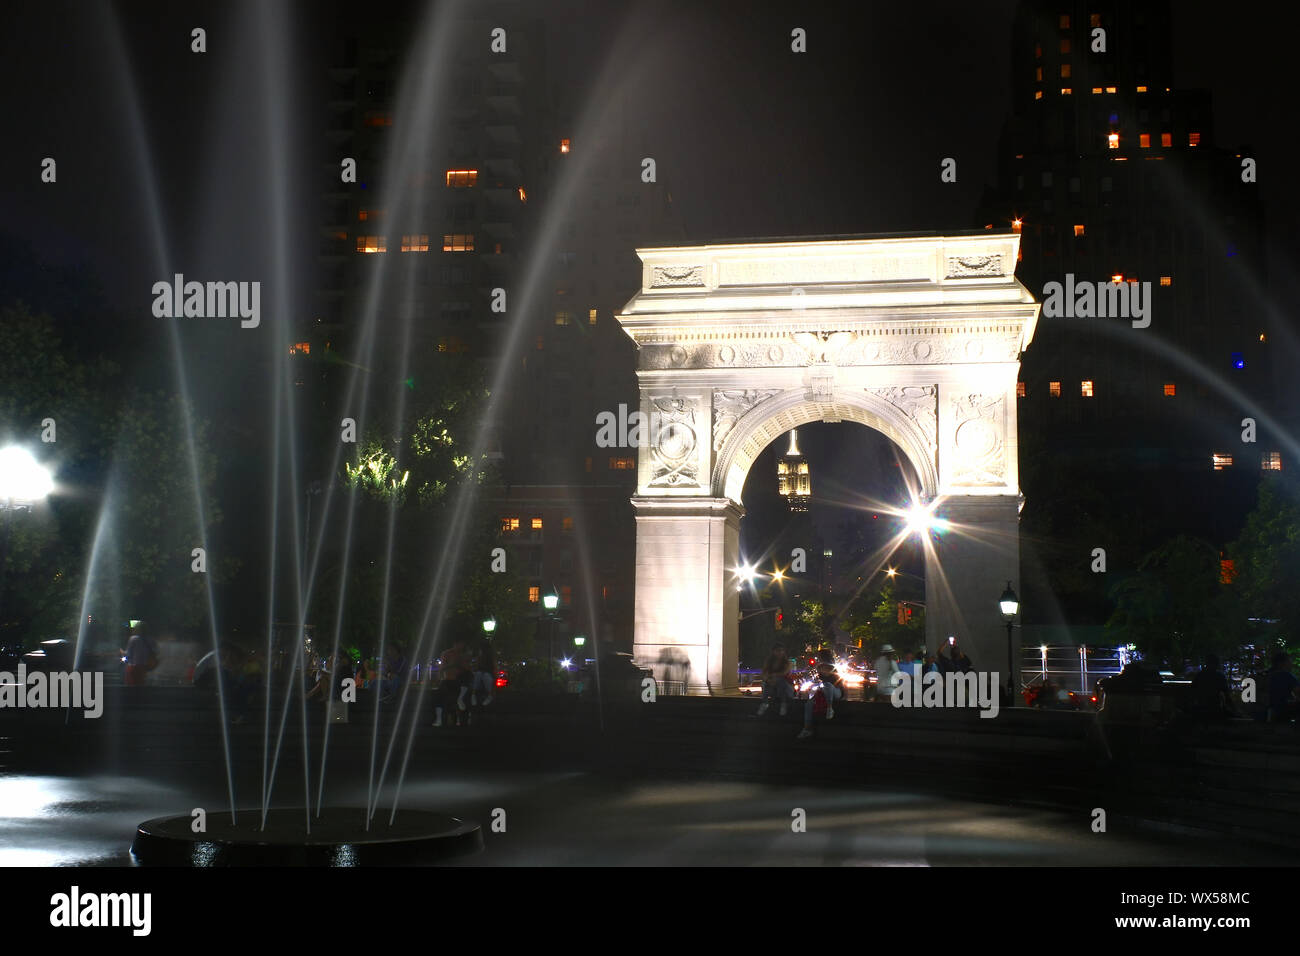 Washington Square Park fontaine est un lieu de rencontre populaire au cours de la fin de l'été soirée, West Village, Manhattan le 31 juillet 2019 à New York, USA. Banque D'Images